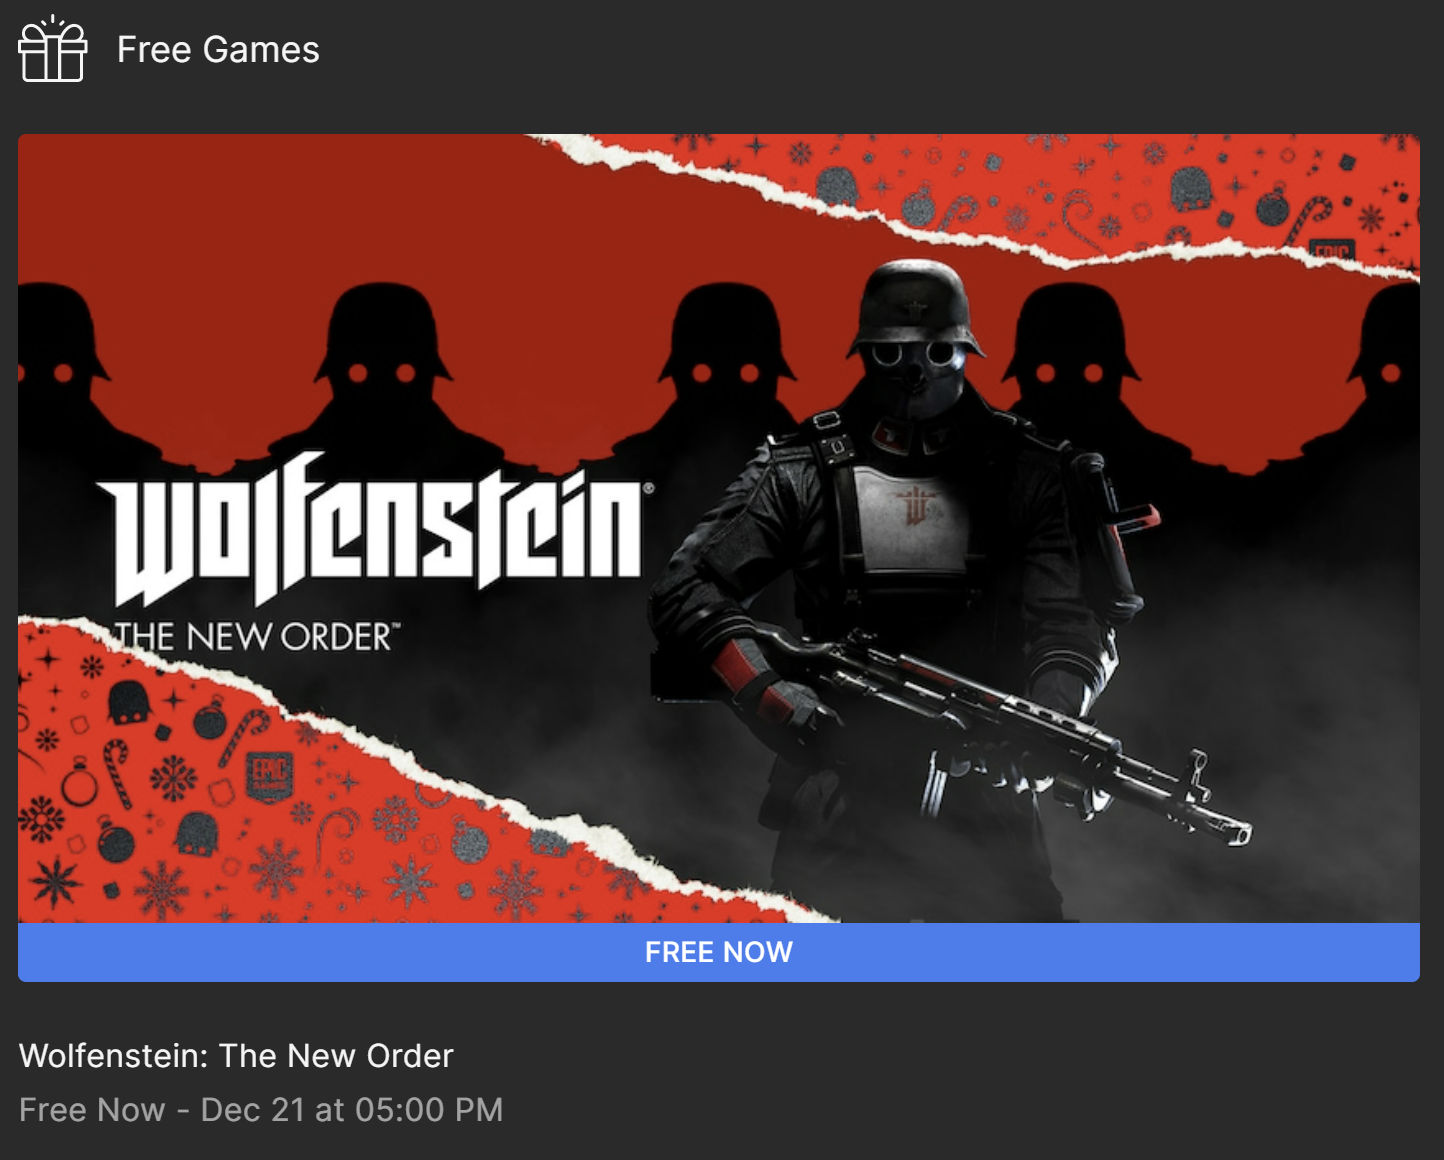 Performance Analysis: Wolfenstein: The New Order